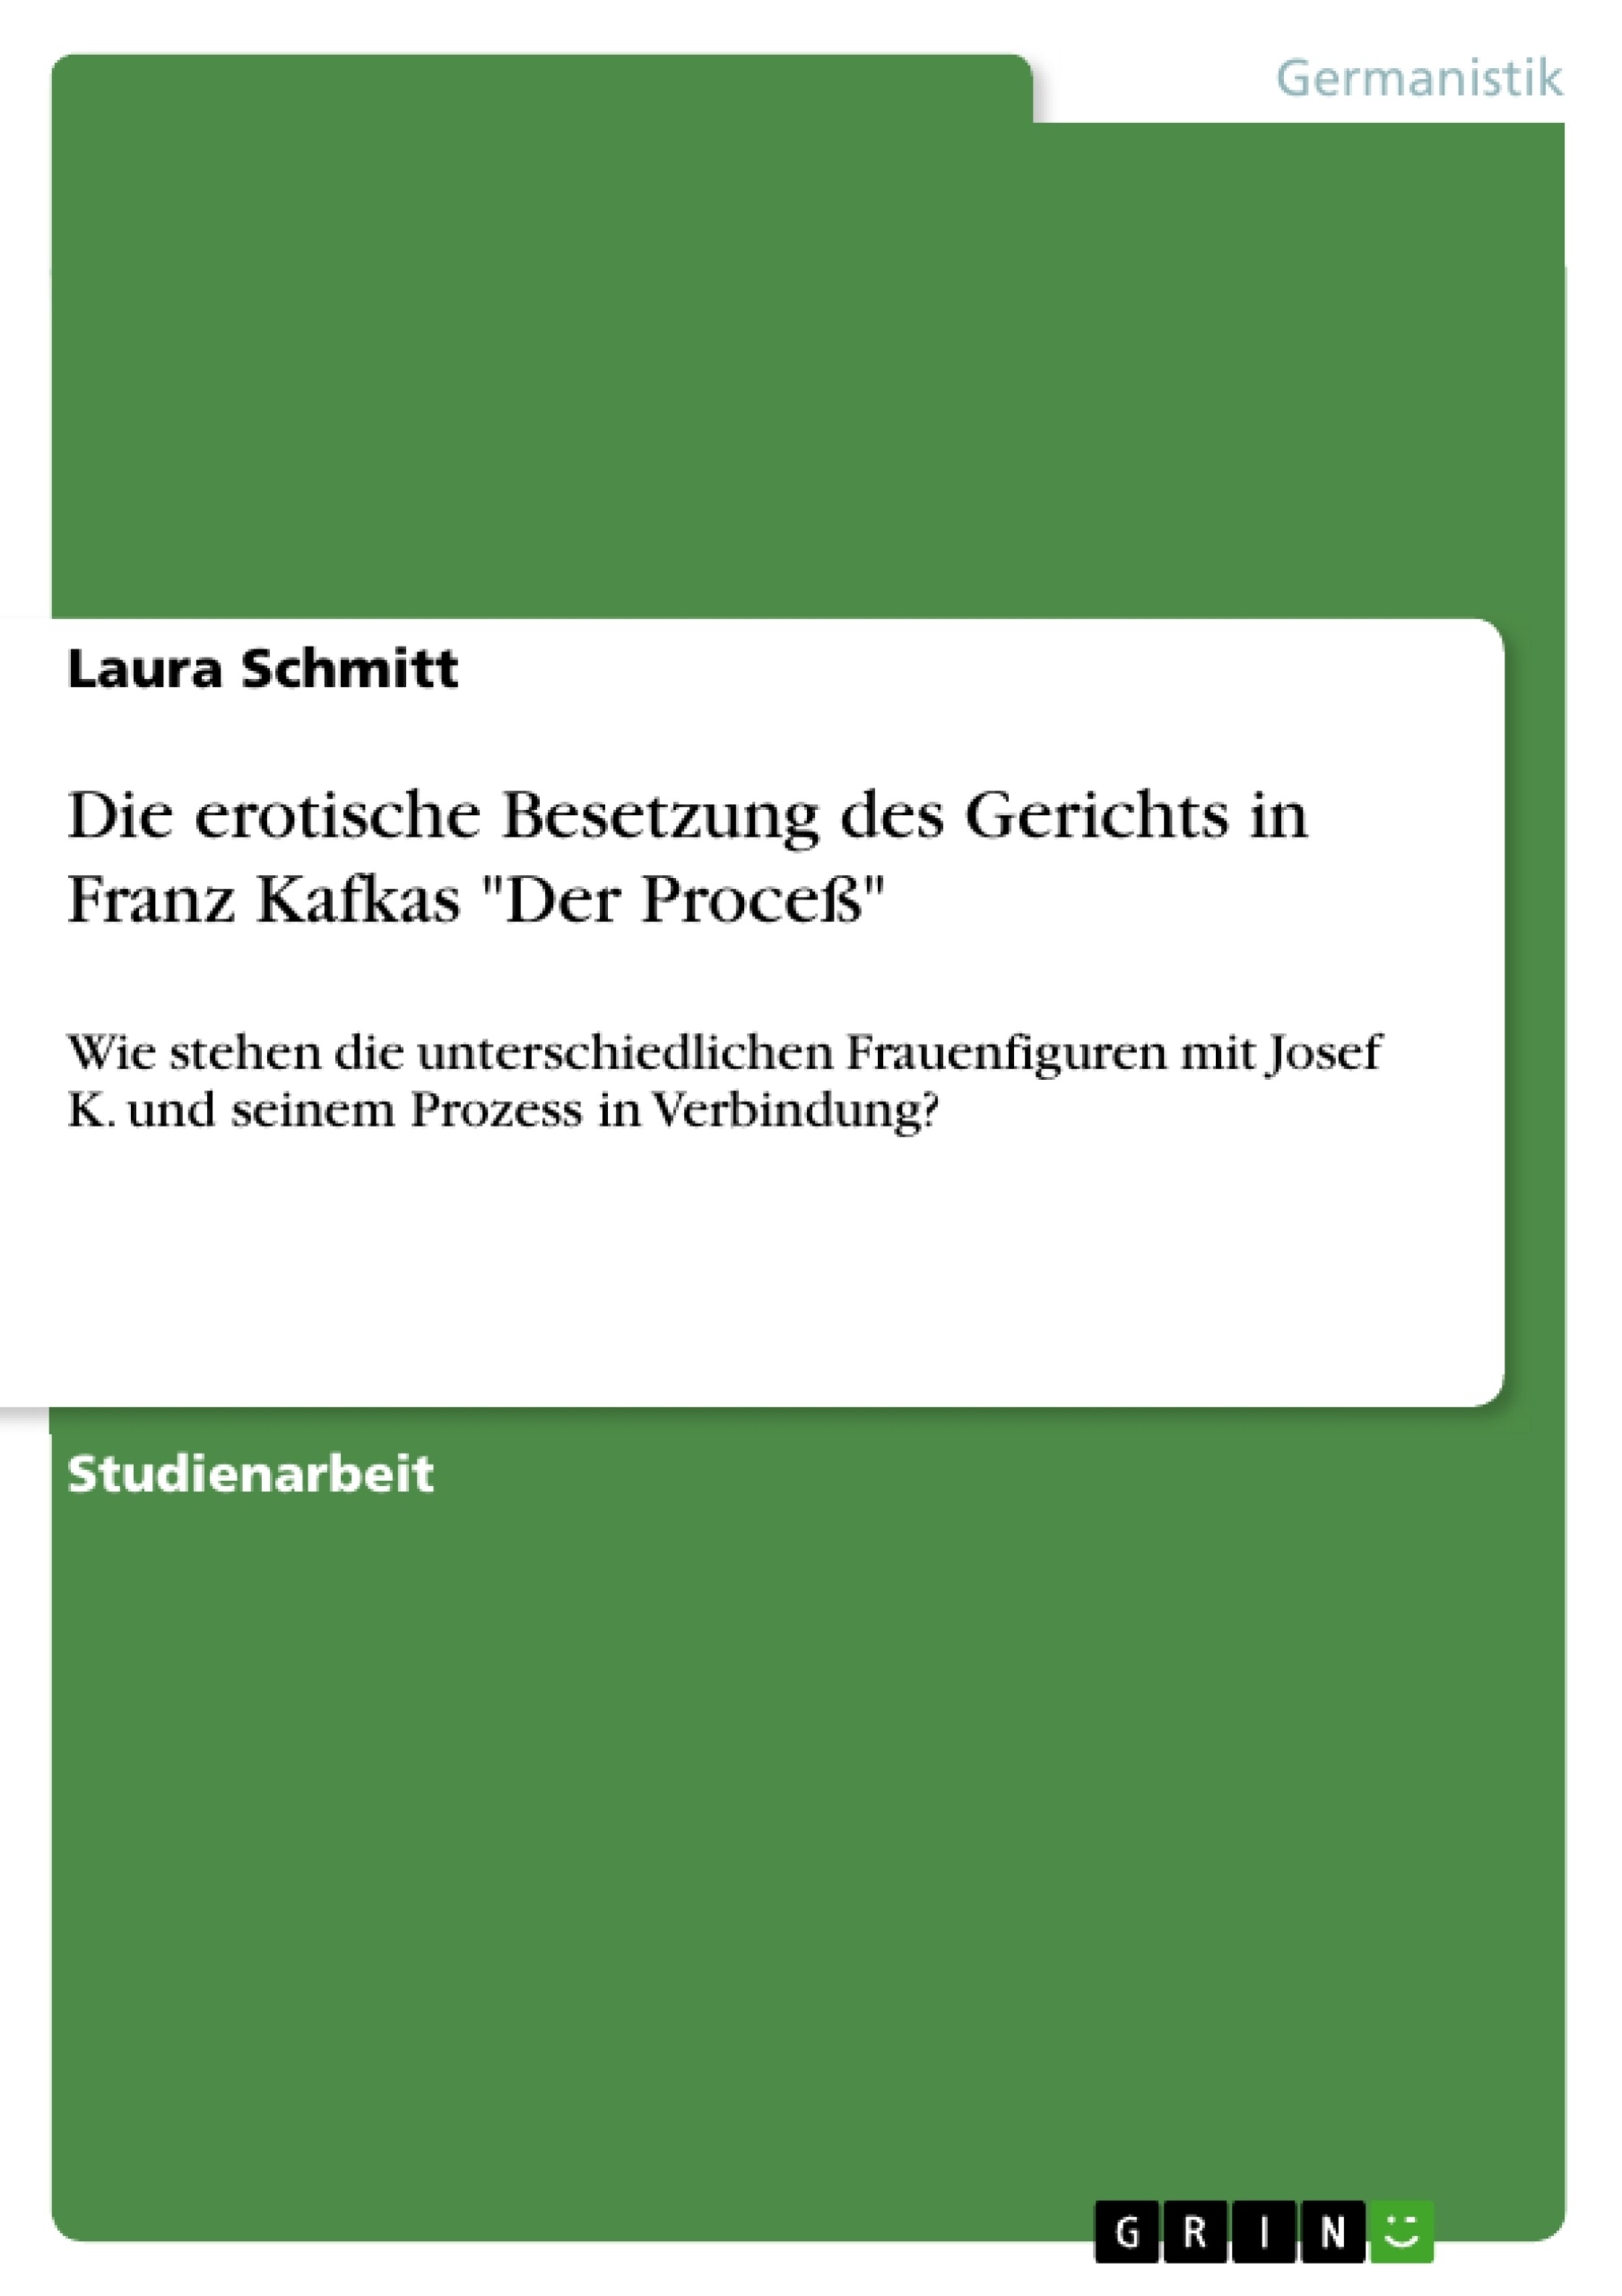 Título: Die erotische Besetzung des Gerichts in Franz Kafkas "Der Proceß"